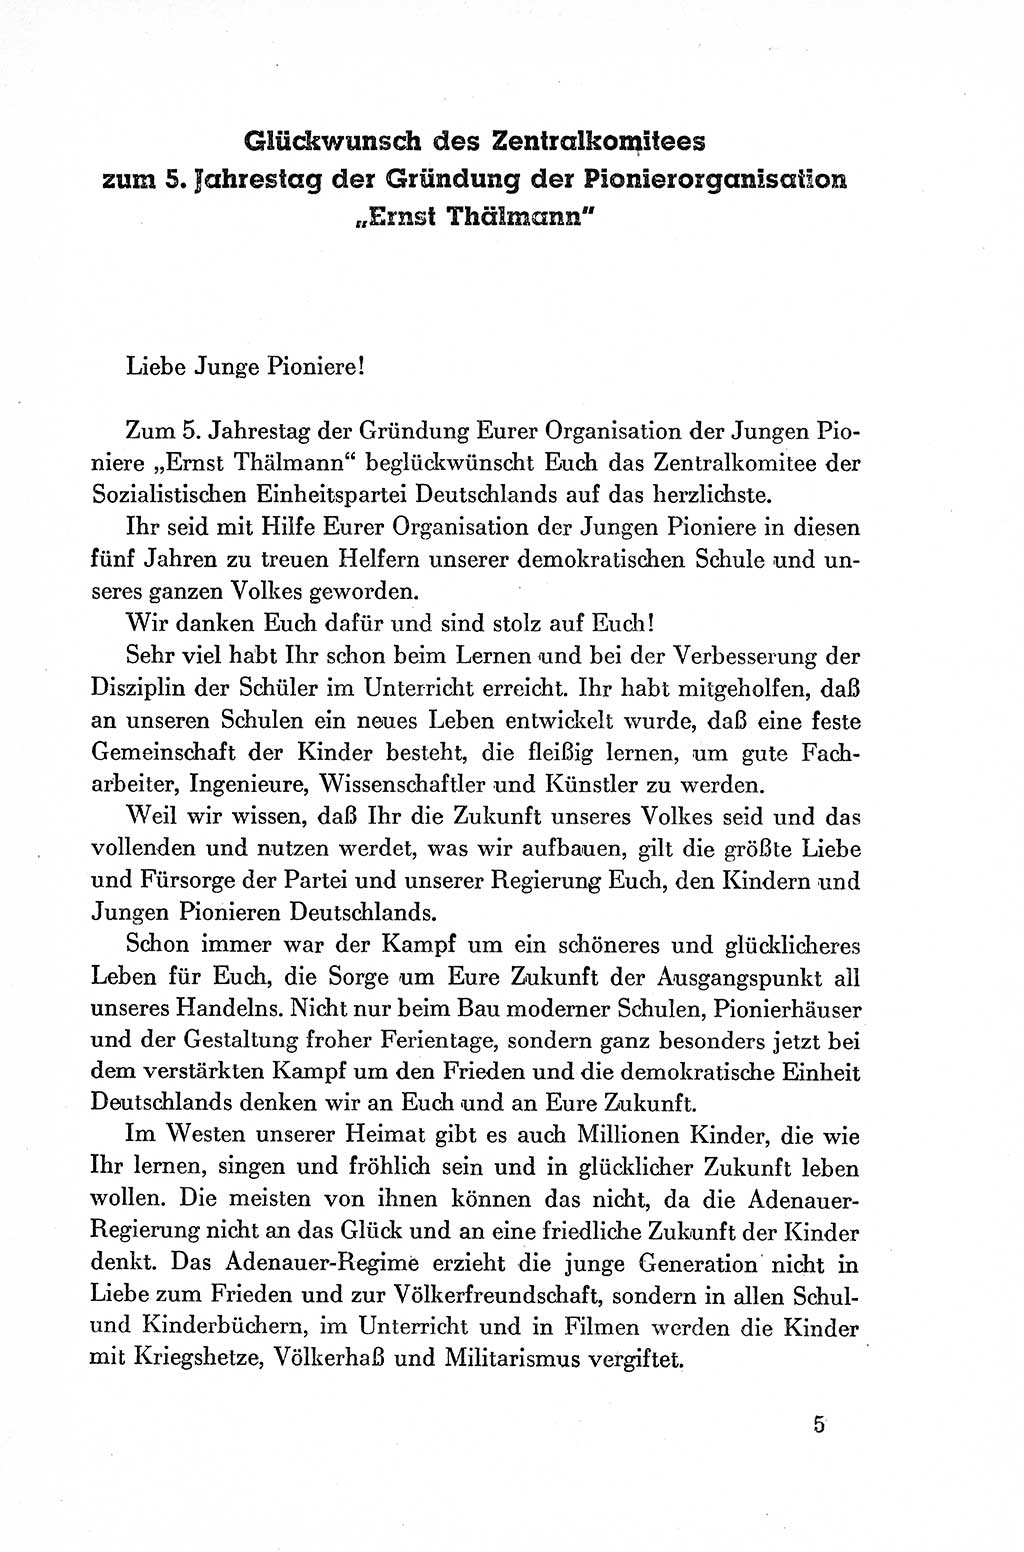 Dokumente der Sozialistischen Einheitspartei Deutschlands (SED) [Deutsche Demokratische Republik (DDR)] 1954-1955, Seite 5 (Dok. SED DDR 1954-1955, S. 5)